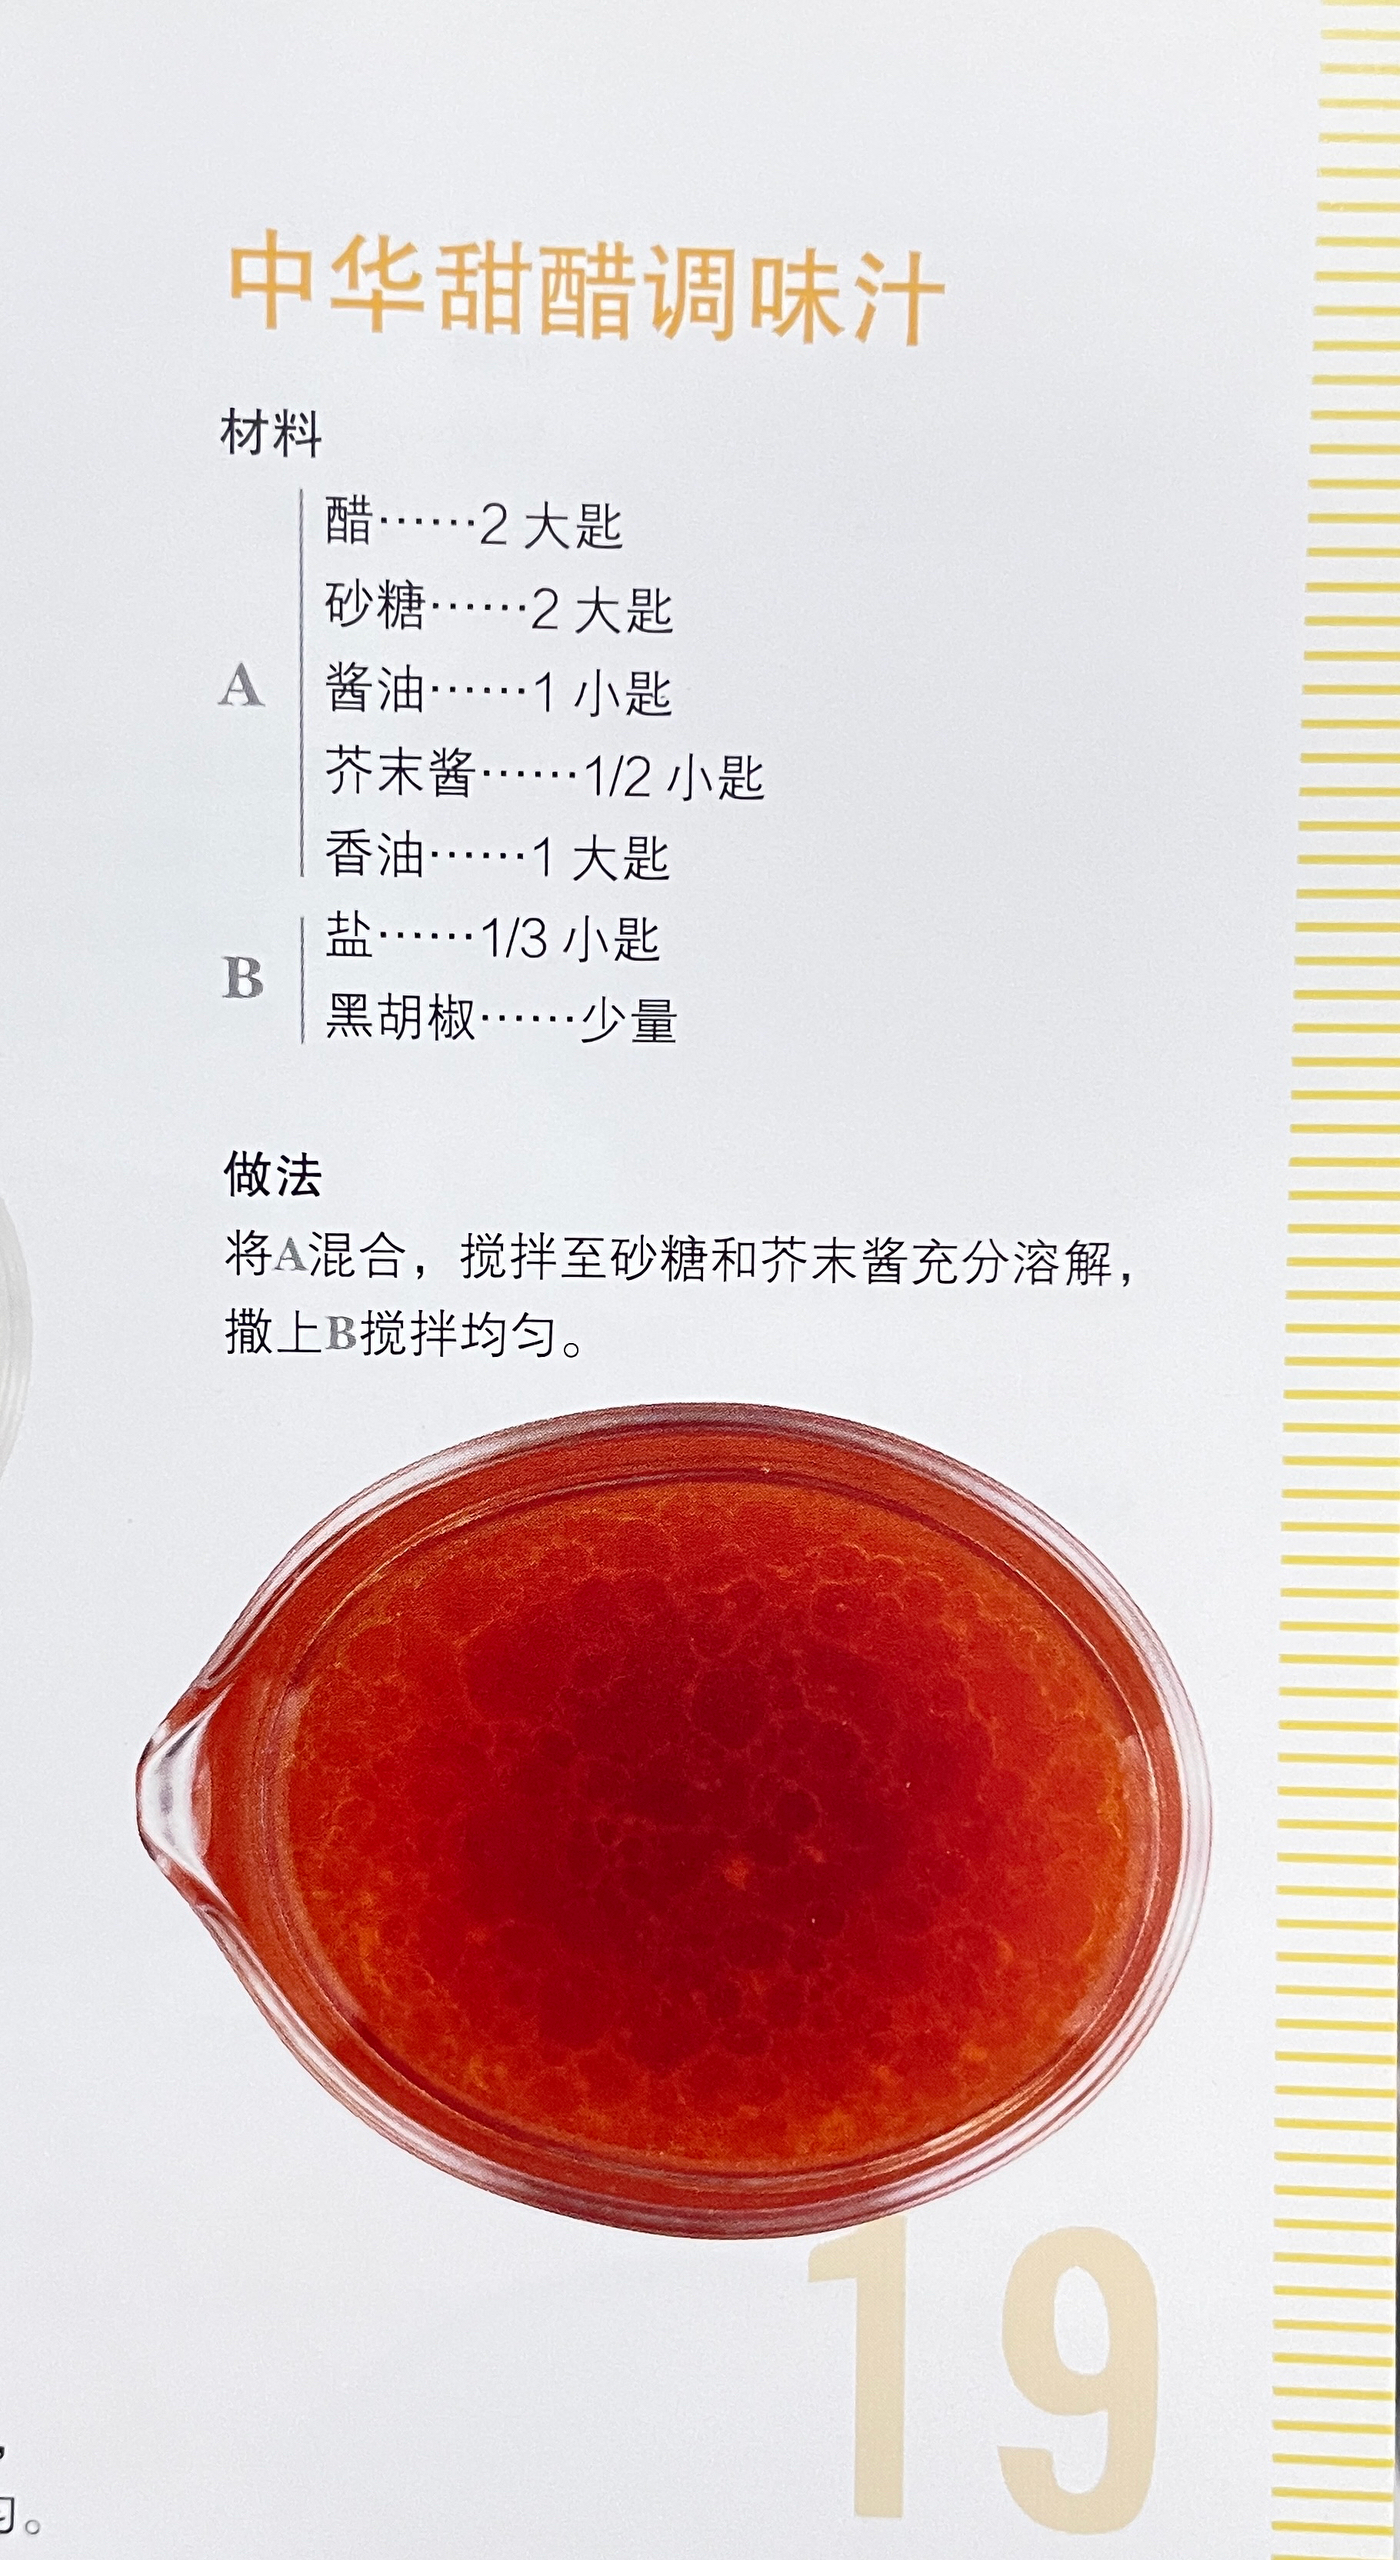 SAUCE_19中华甜醋调味汁